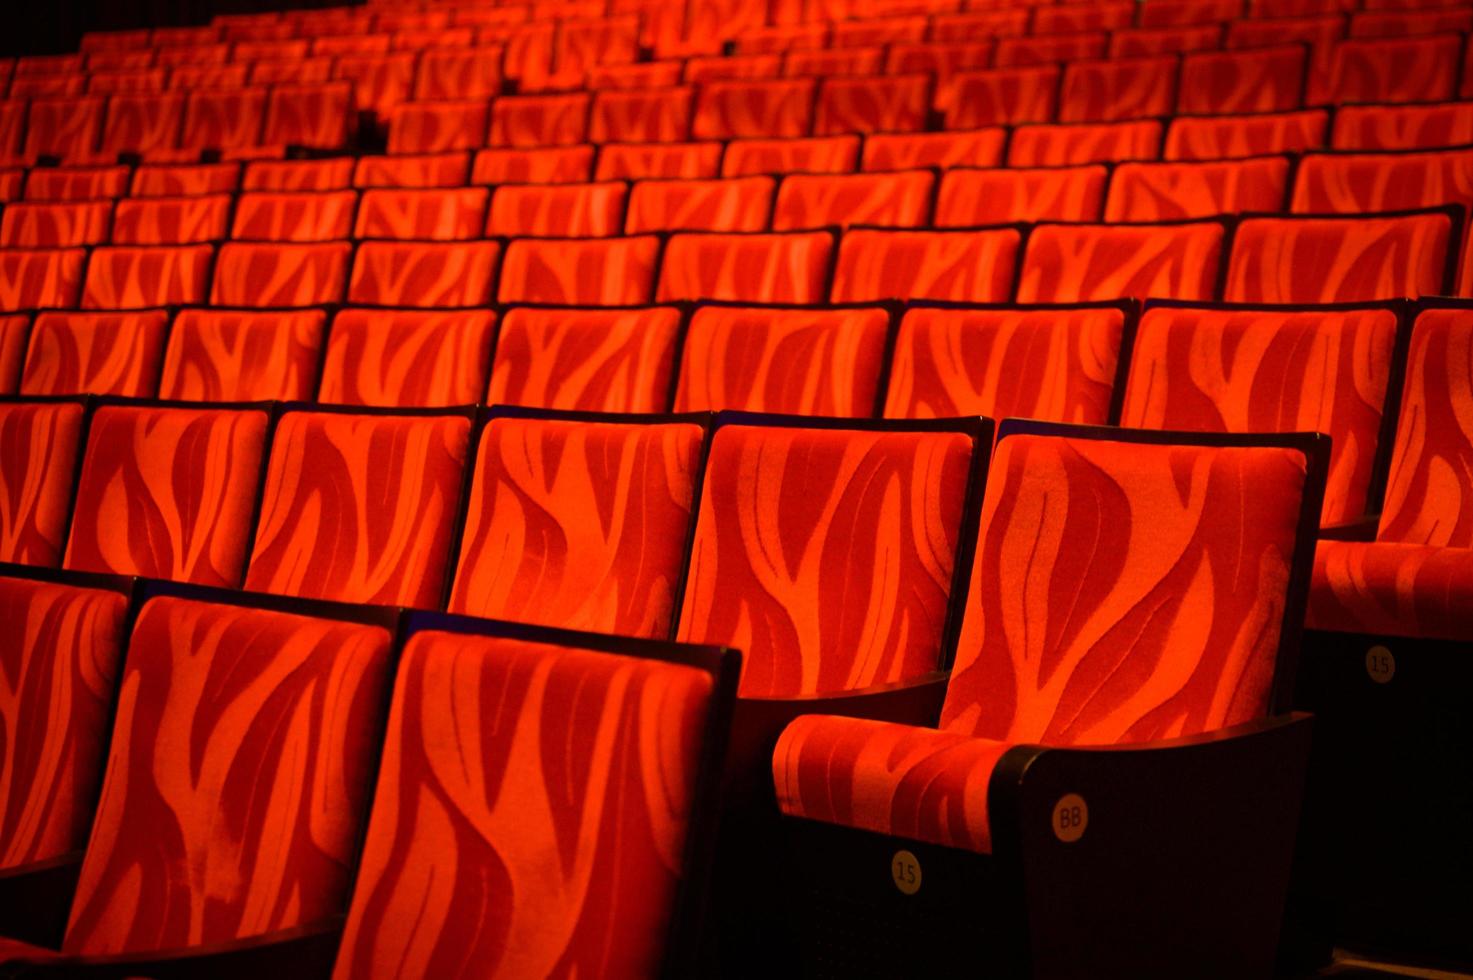 filas de asientos de teatro rojo foto